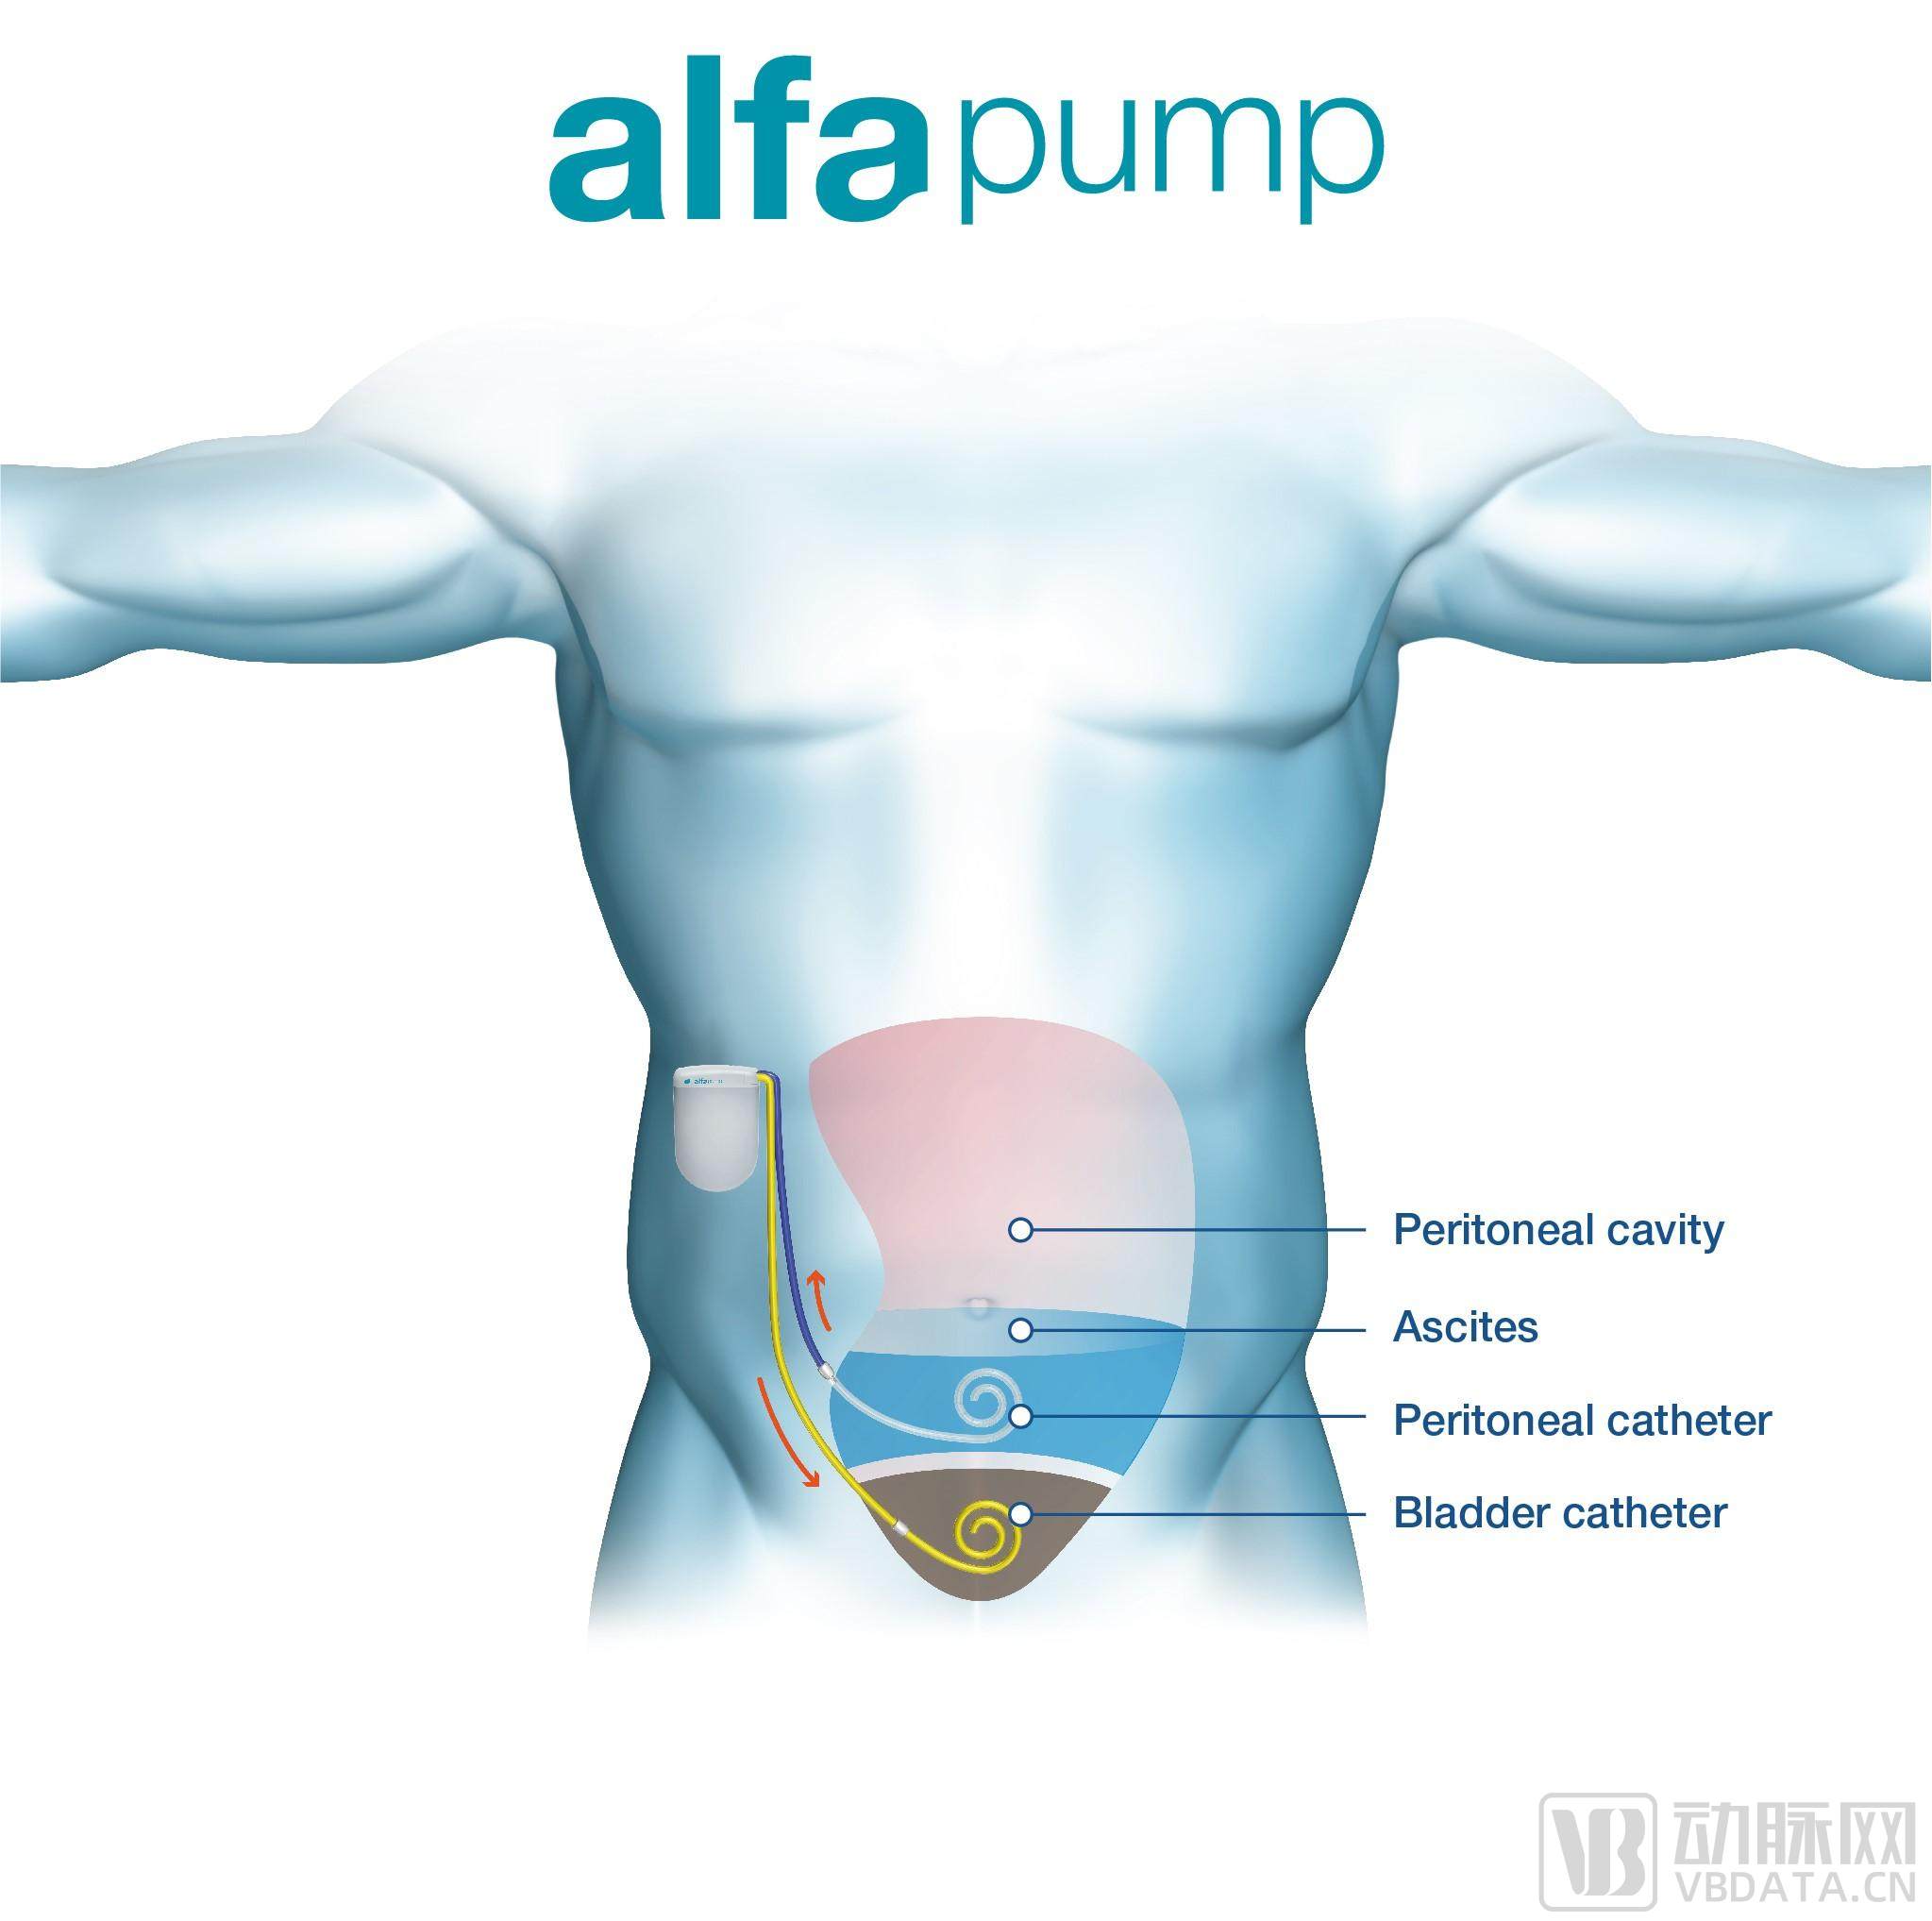 alfa Pump ®通过微创手术植入.jpg